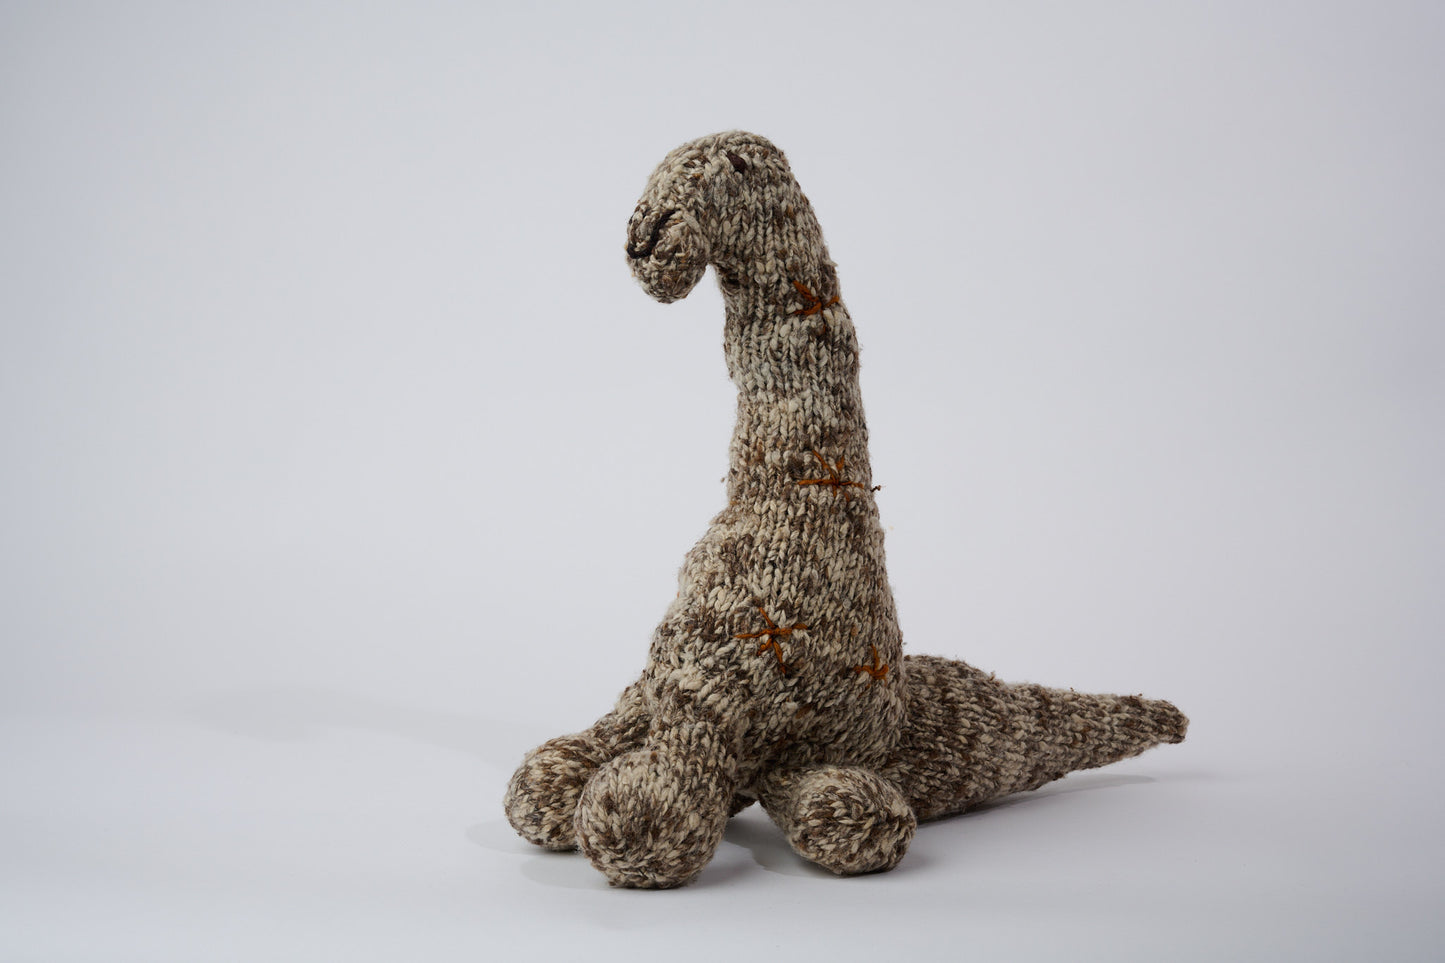 NESSIE, doudou brontosaure en laine mérinos. Fait main. Moyen format. Cette sympathique peluche dinosaure est disponible en 3 tailles. 